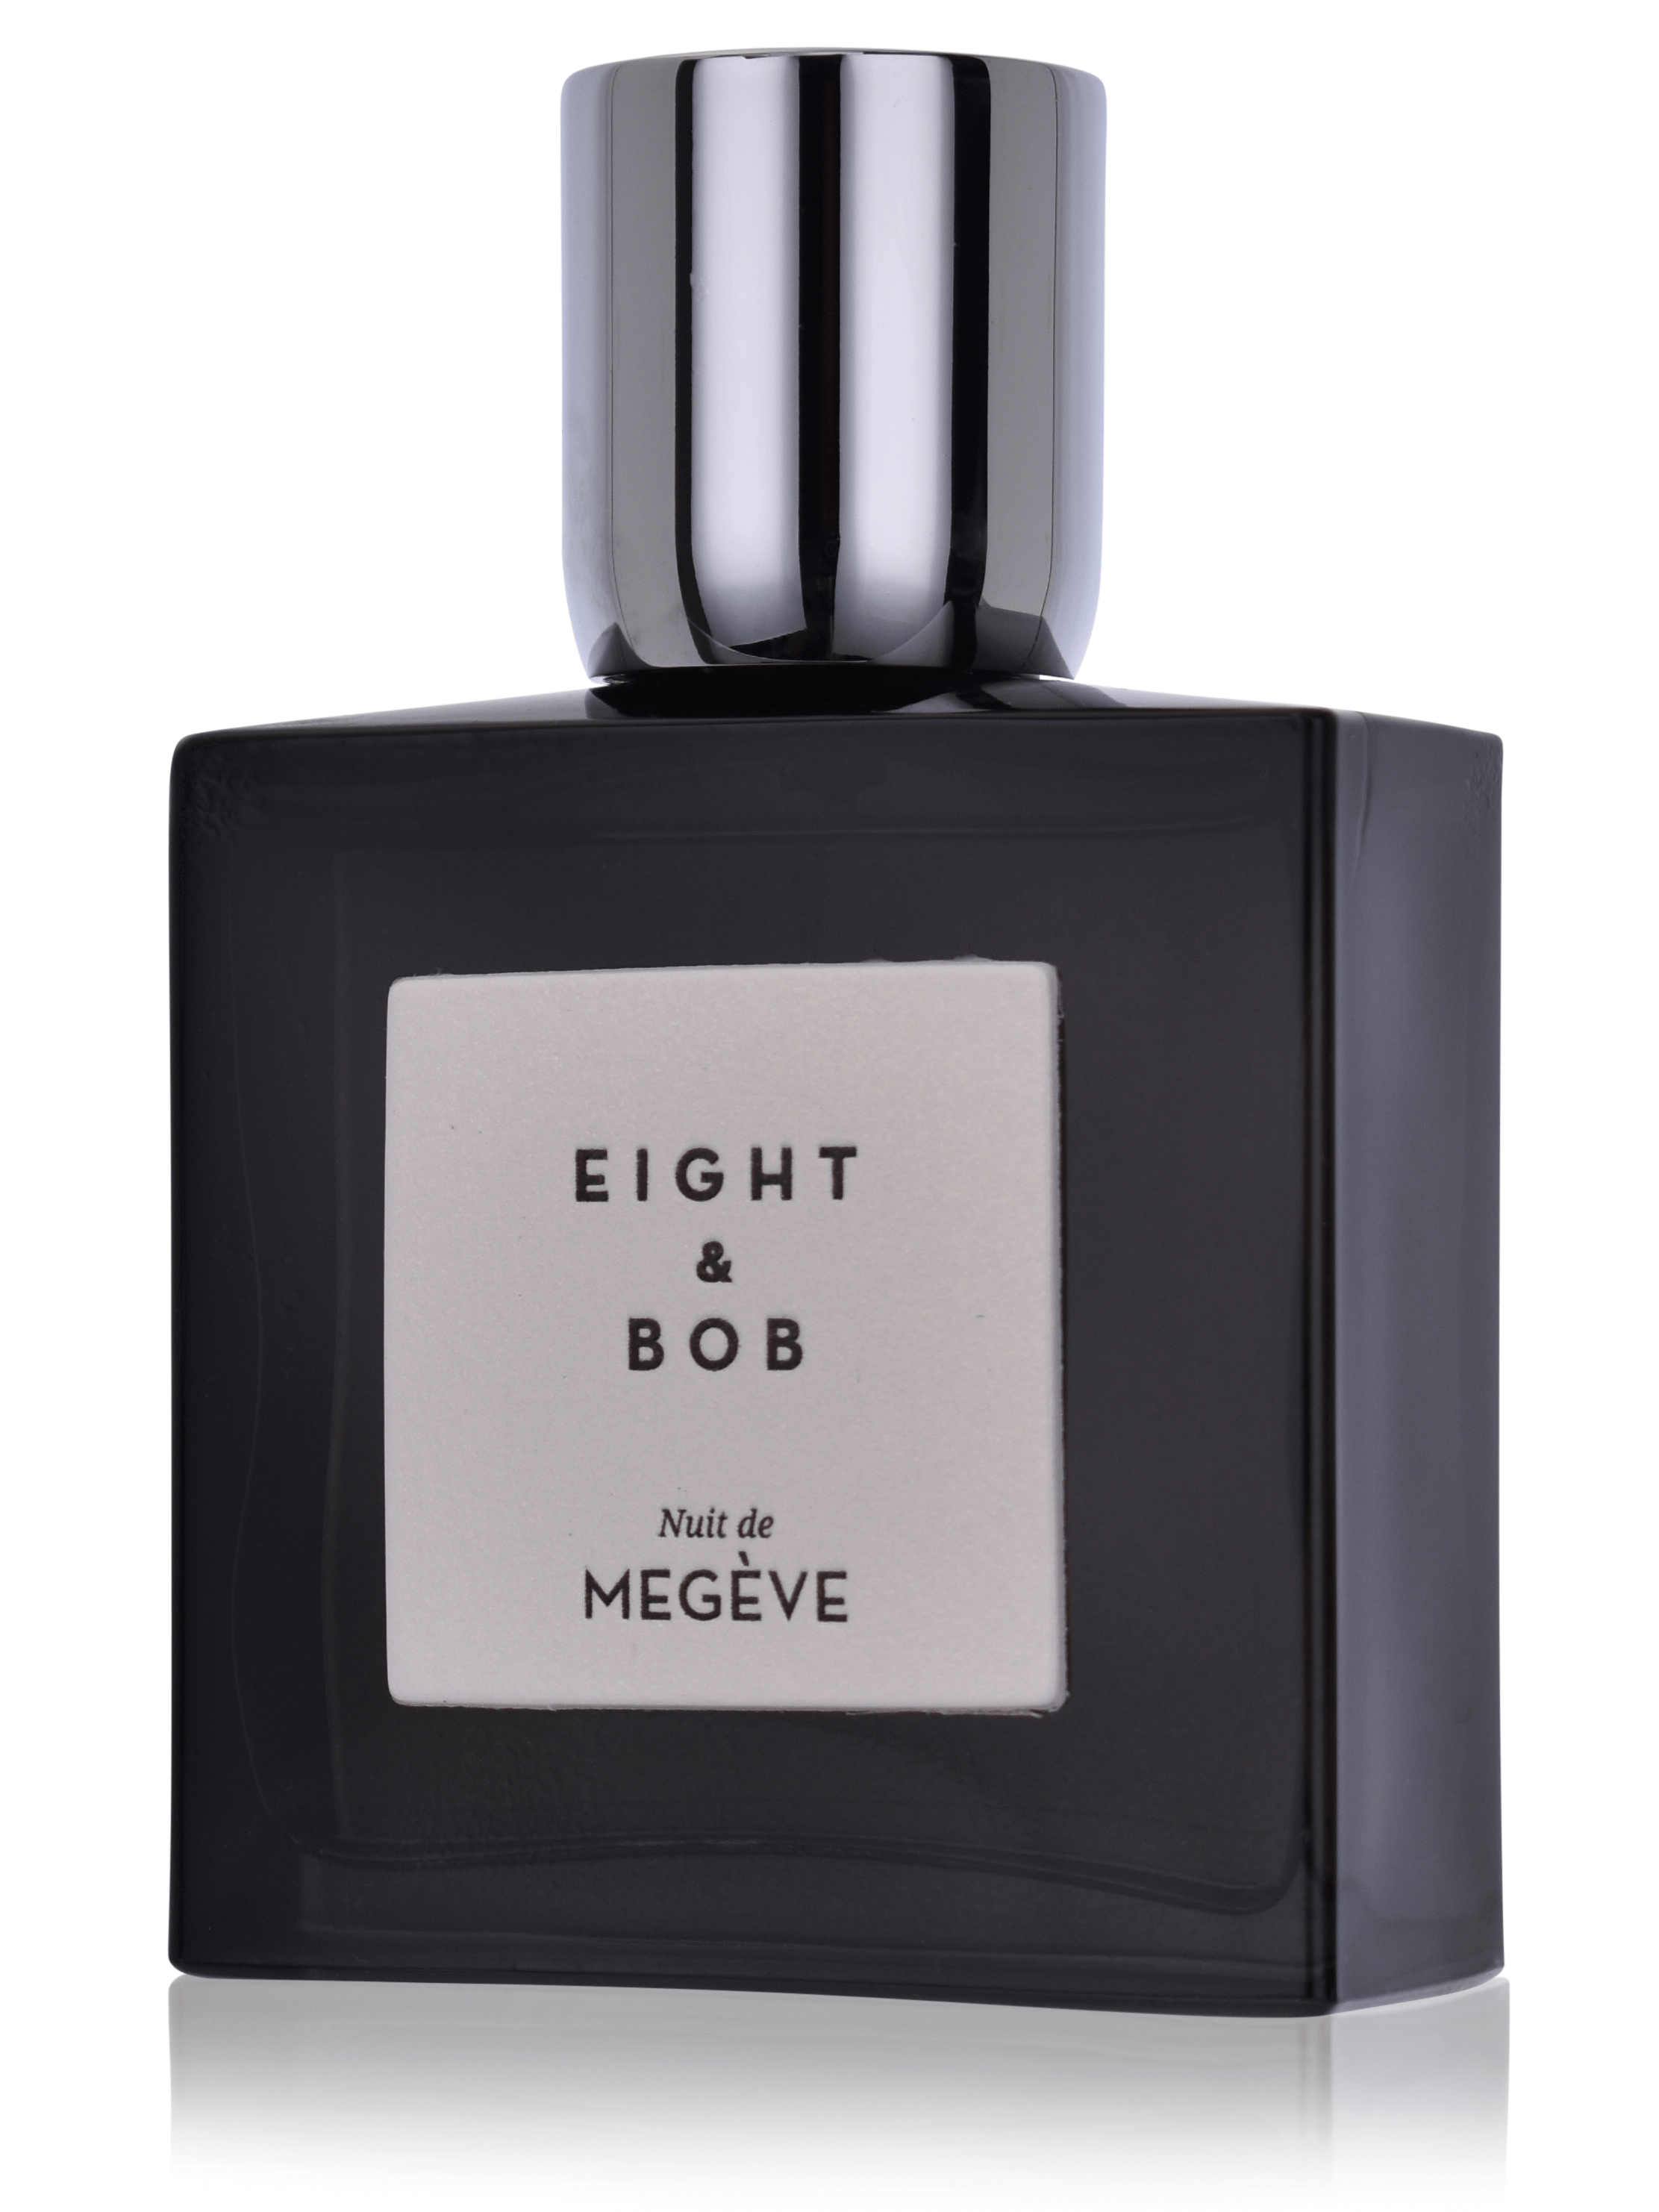 Eight & Bob Nuit de Megeve 5 ml Eau de Parfum Abfüllung